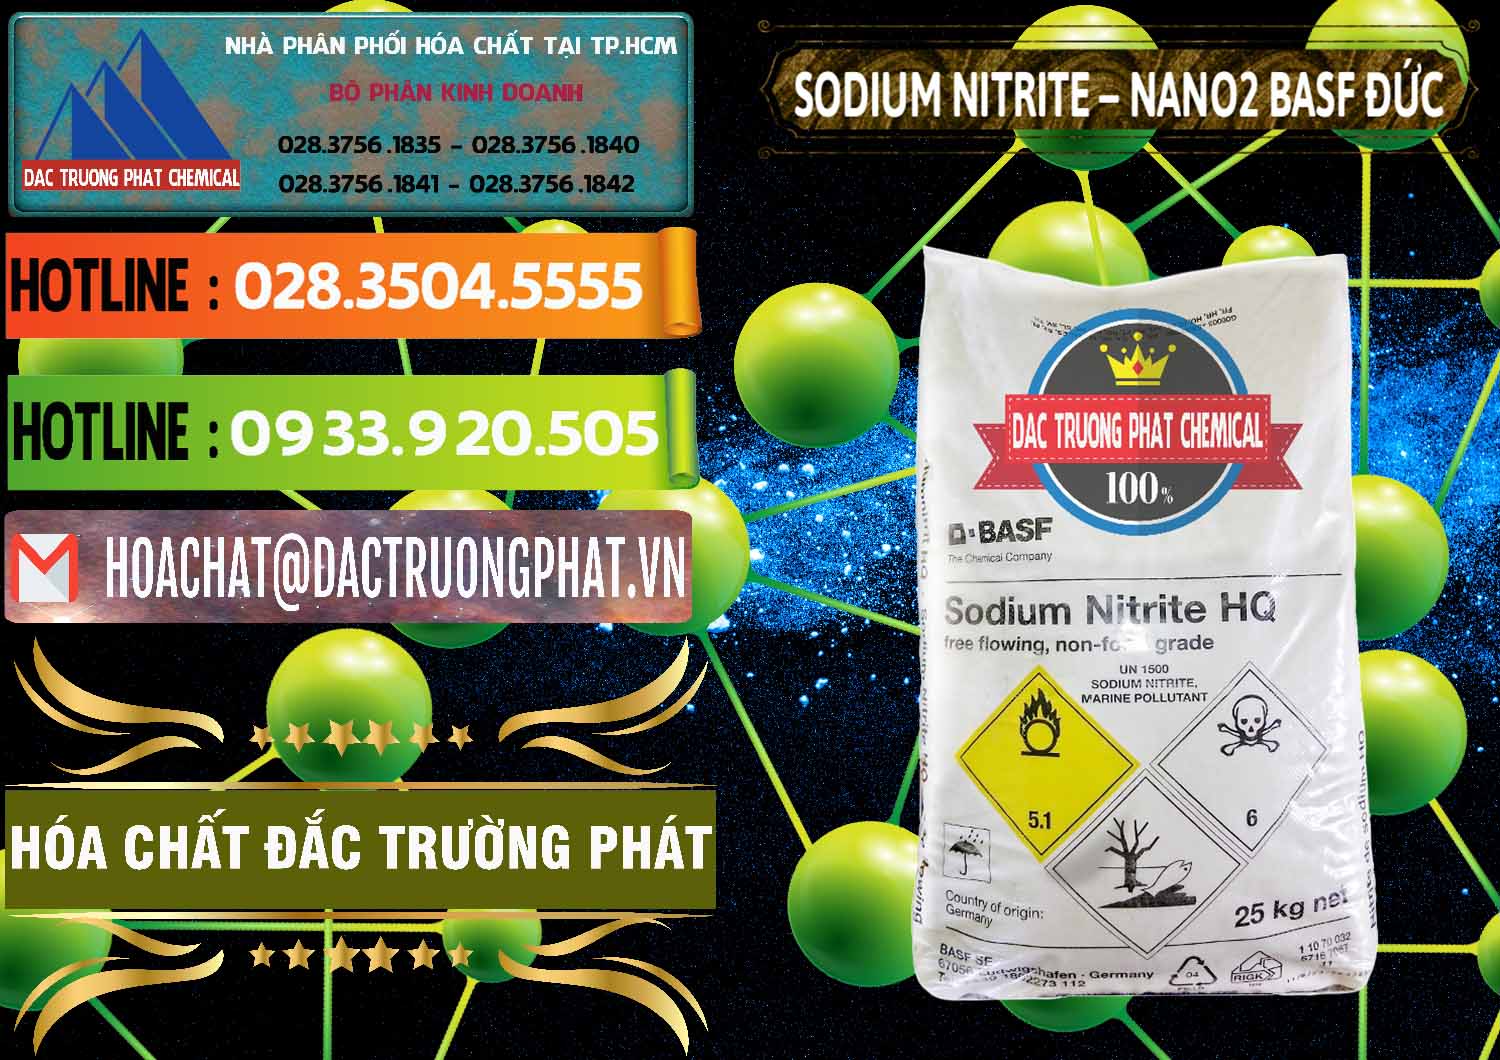 Nơi chuyên bán - cung ứng Sodium Nitrite - NANO2 Đức BASF Germany - 0148 - Nơi chuyên nhập khẩu - phân phối hóa chất tại TP.HCM - cungcaphoachat.com.vn